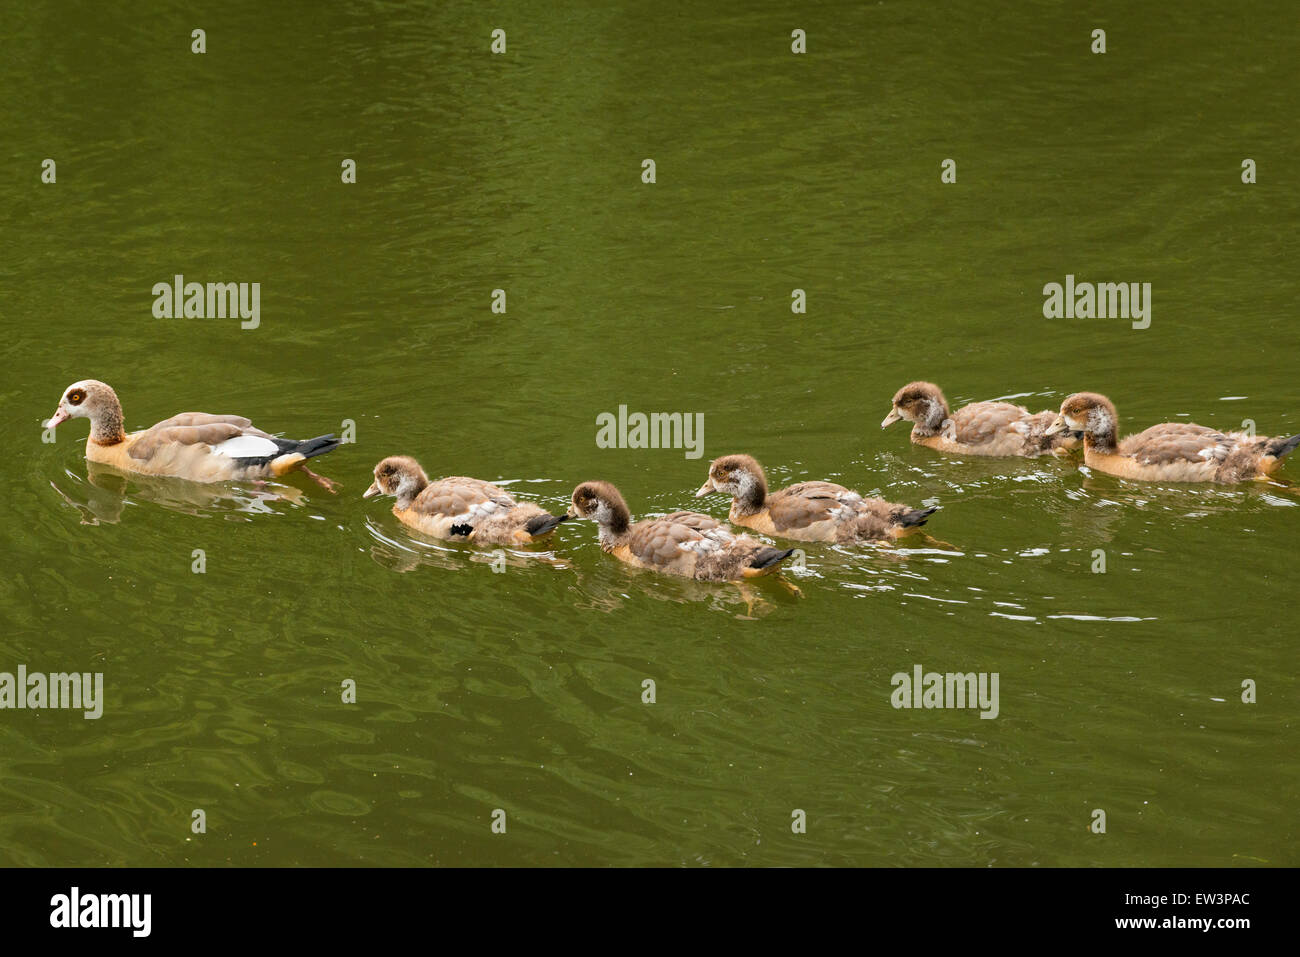 A nord ovest di Londra kenwood house Hampstead Heath fauna selvatica del Parco naturale del bosco di riserva di scena oche oca gosling 5 goslings lago d acqua nuoto di stagno Foto Stock